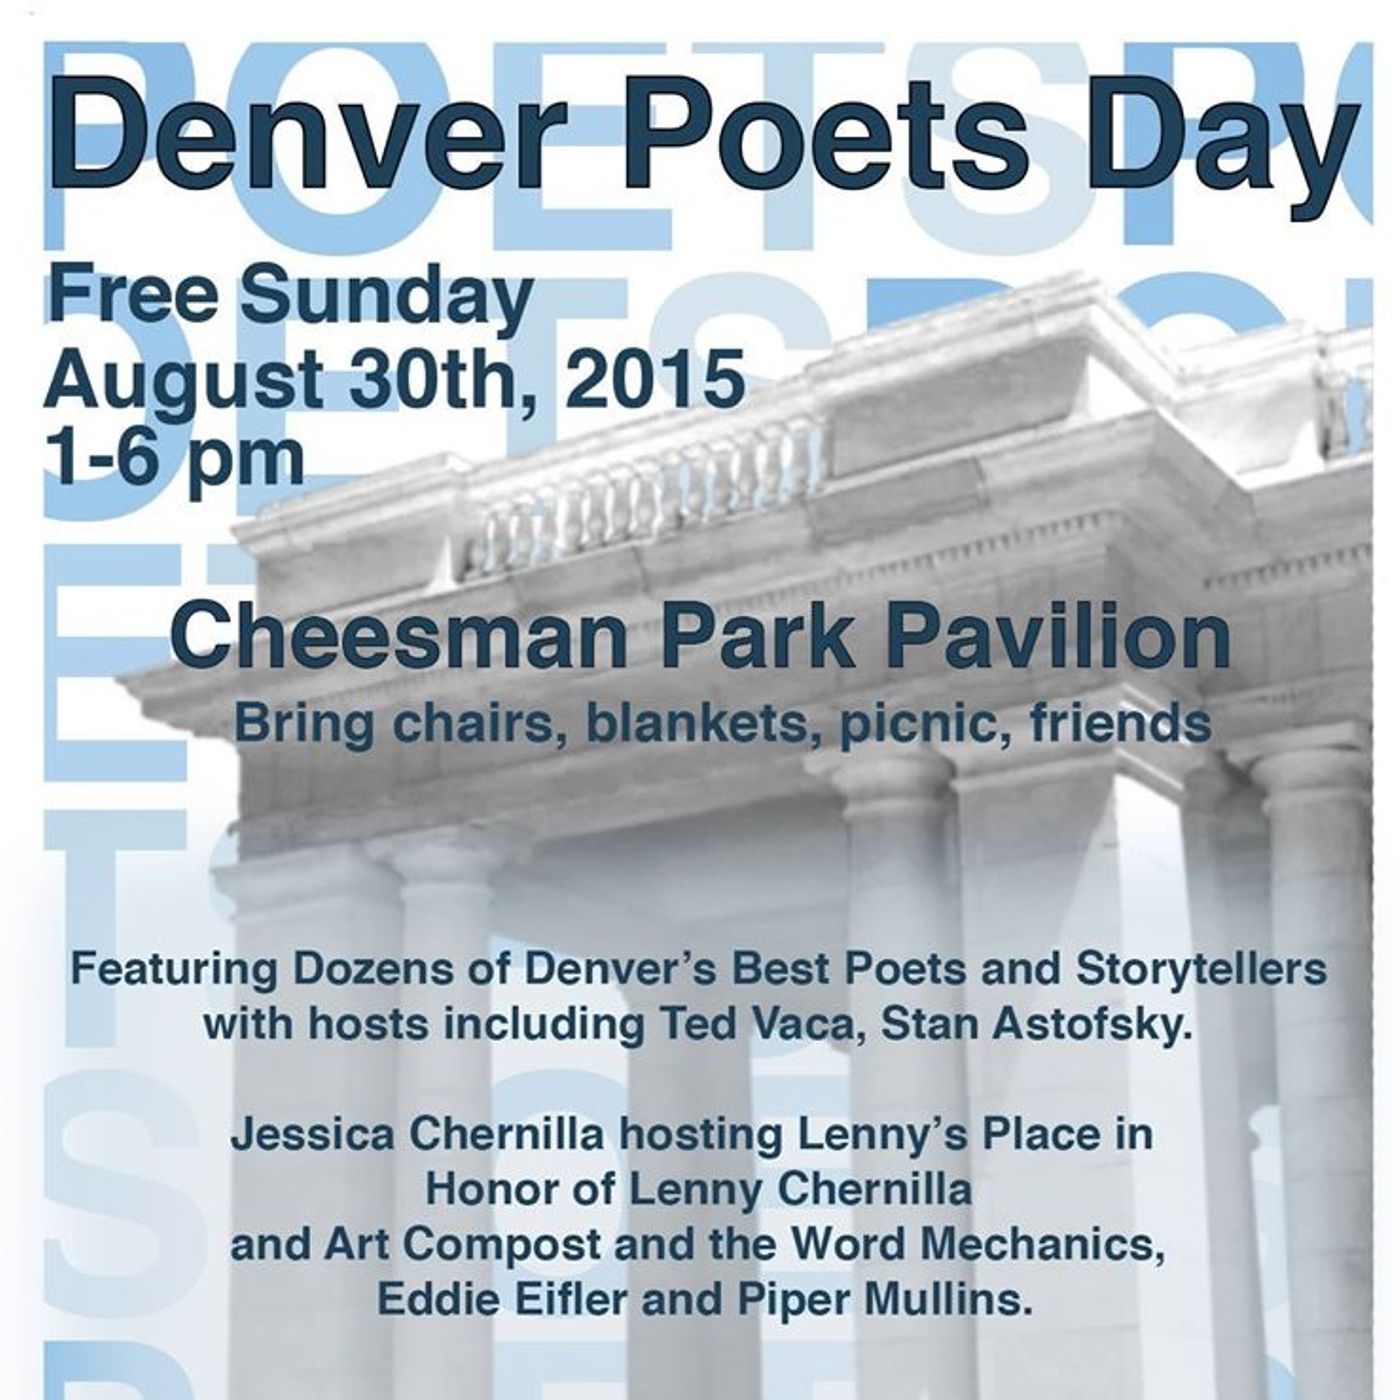 Denver Poets Day